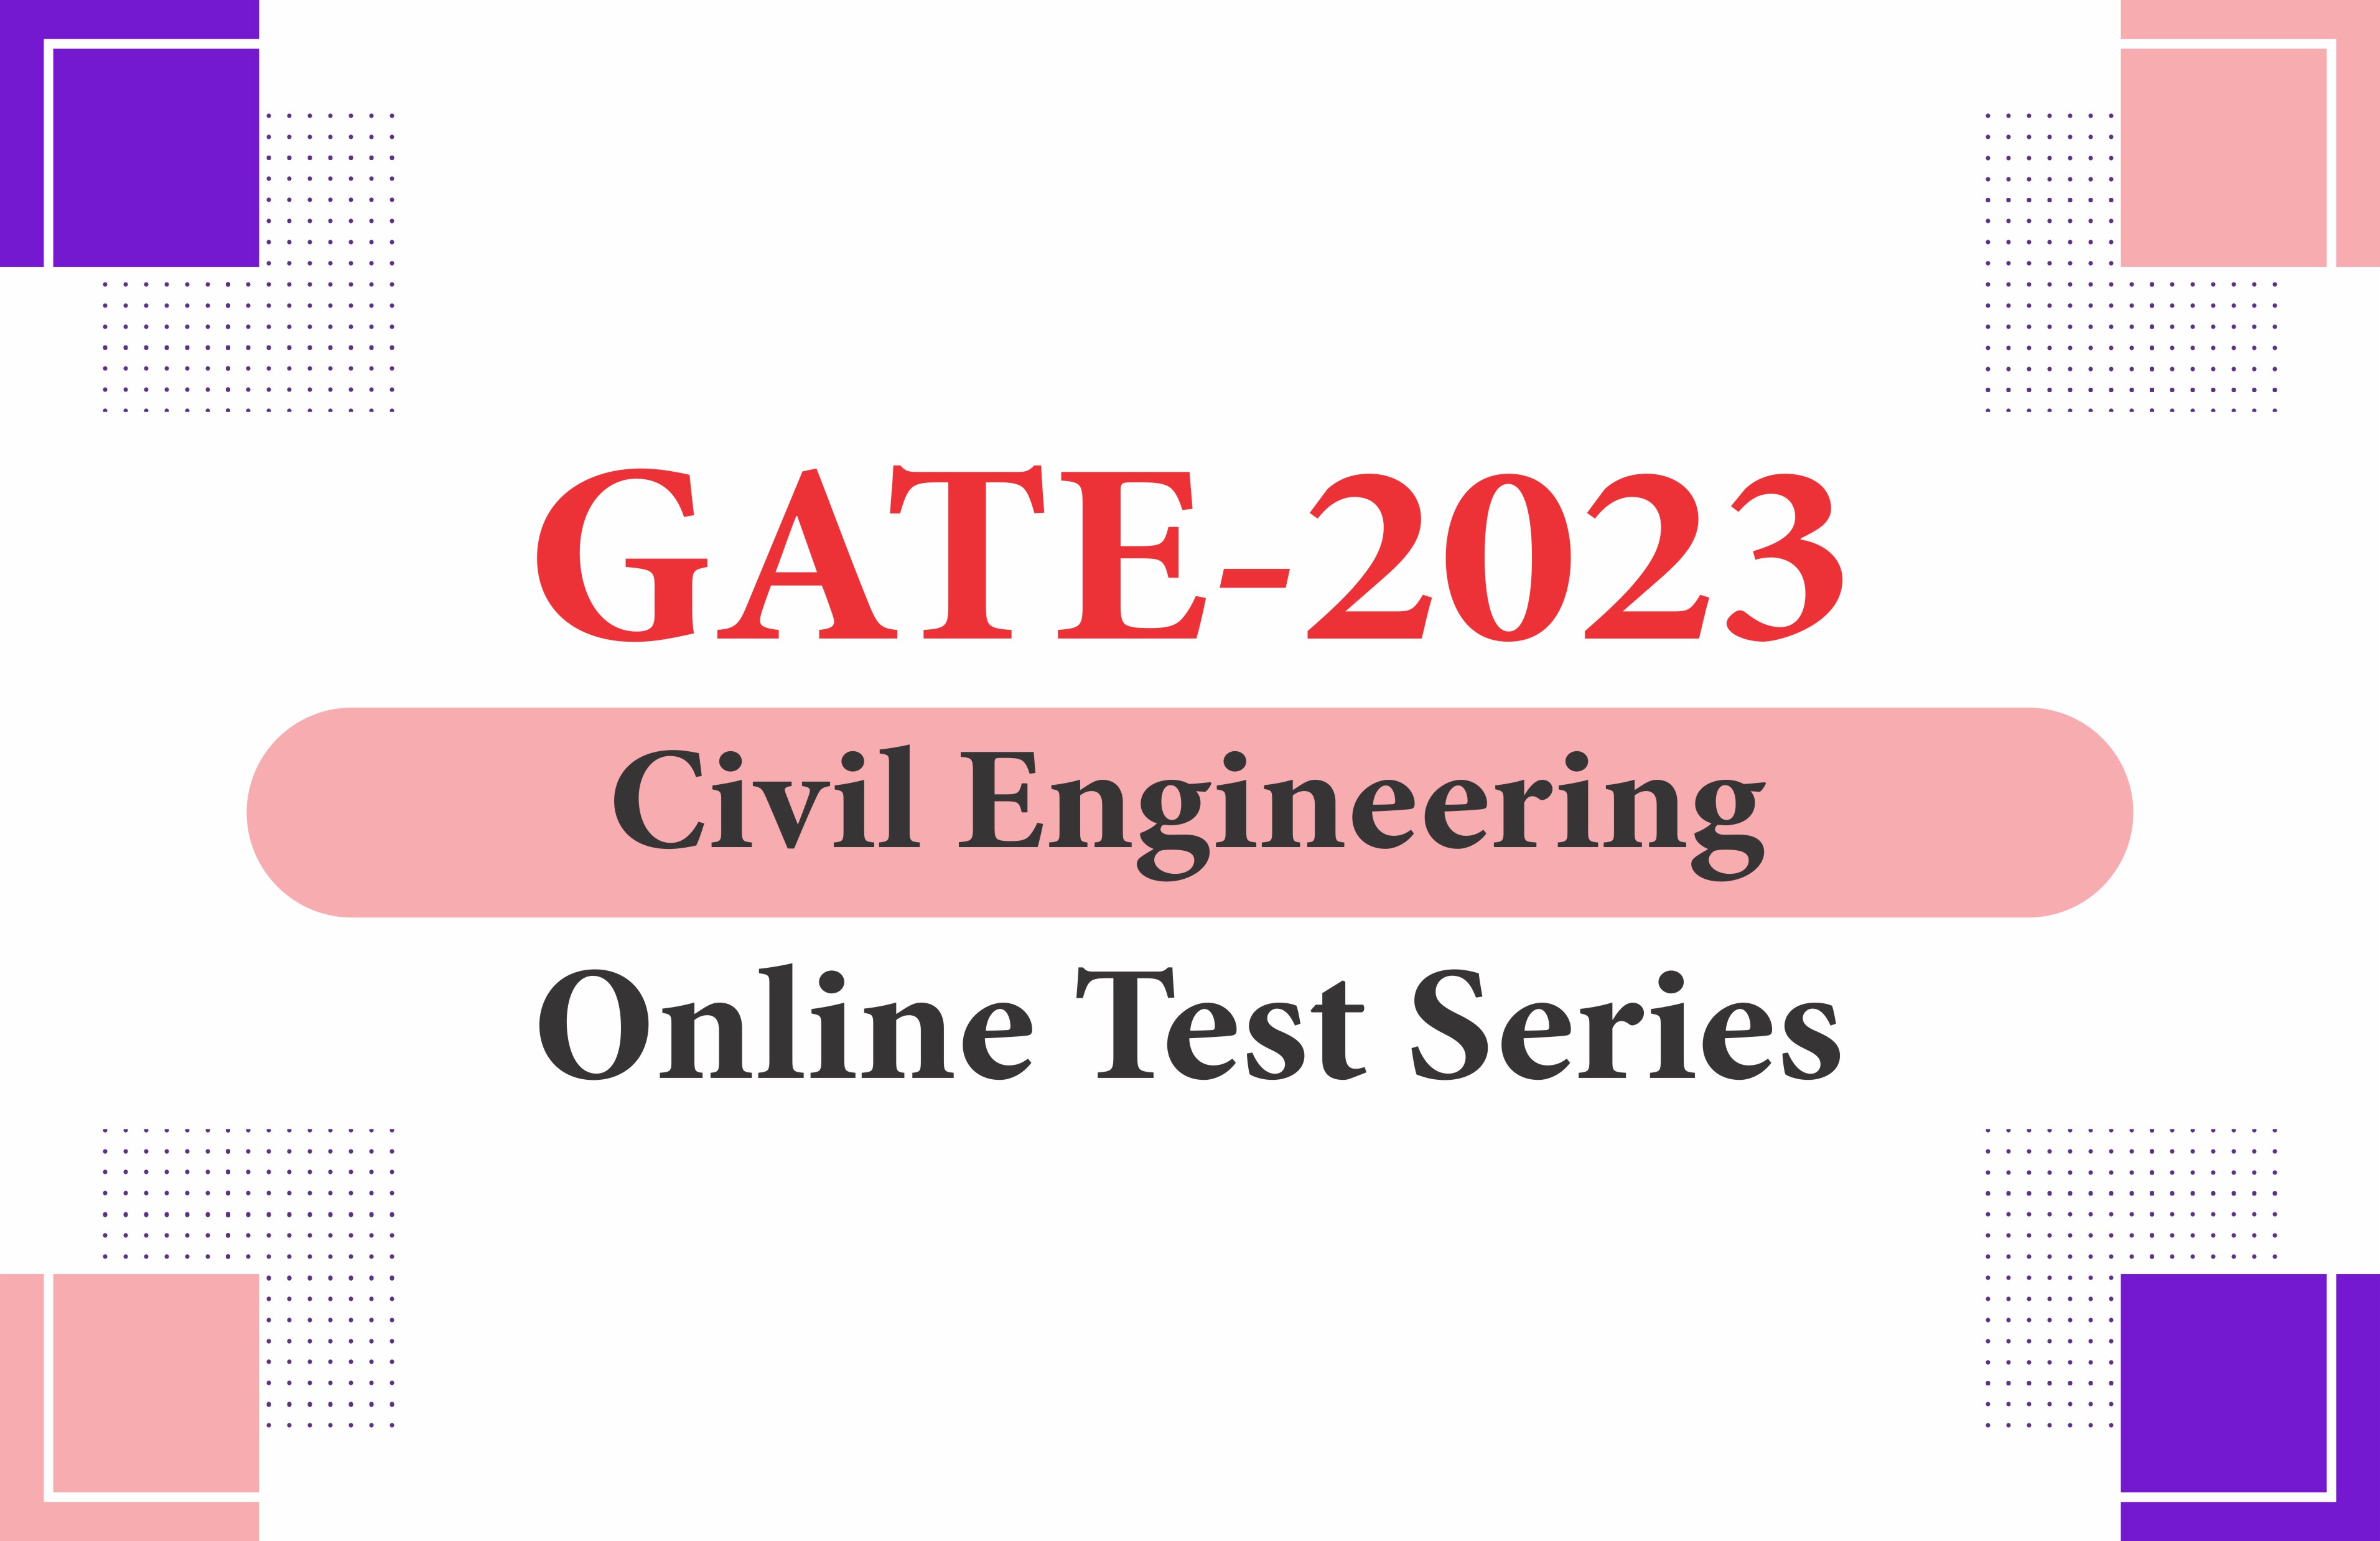 GATE -2023 Civil Engineering Online Test Series